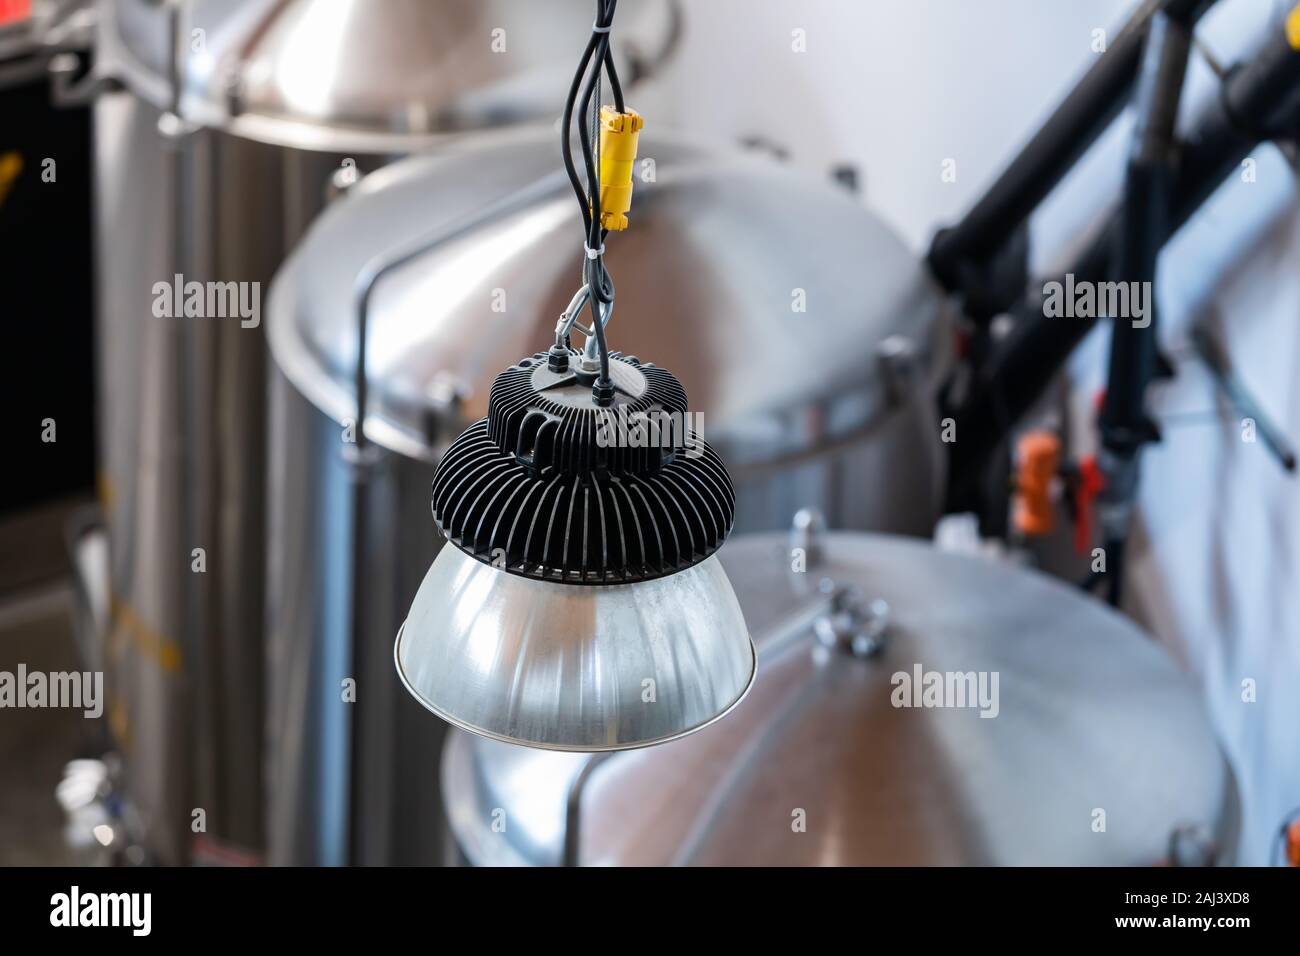 Industrielle hängende Lampe oben selektiven Fokus Ansicht gegen Brauerei  Edelstahl Tanks und Behälter im Hintergrund Stockfotografie - Alamy